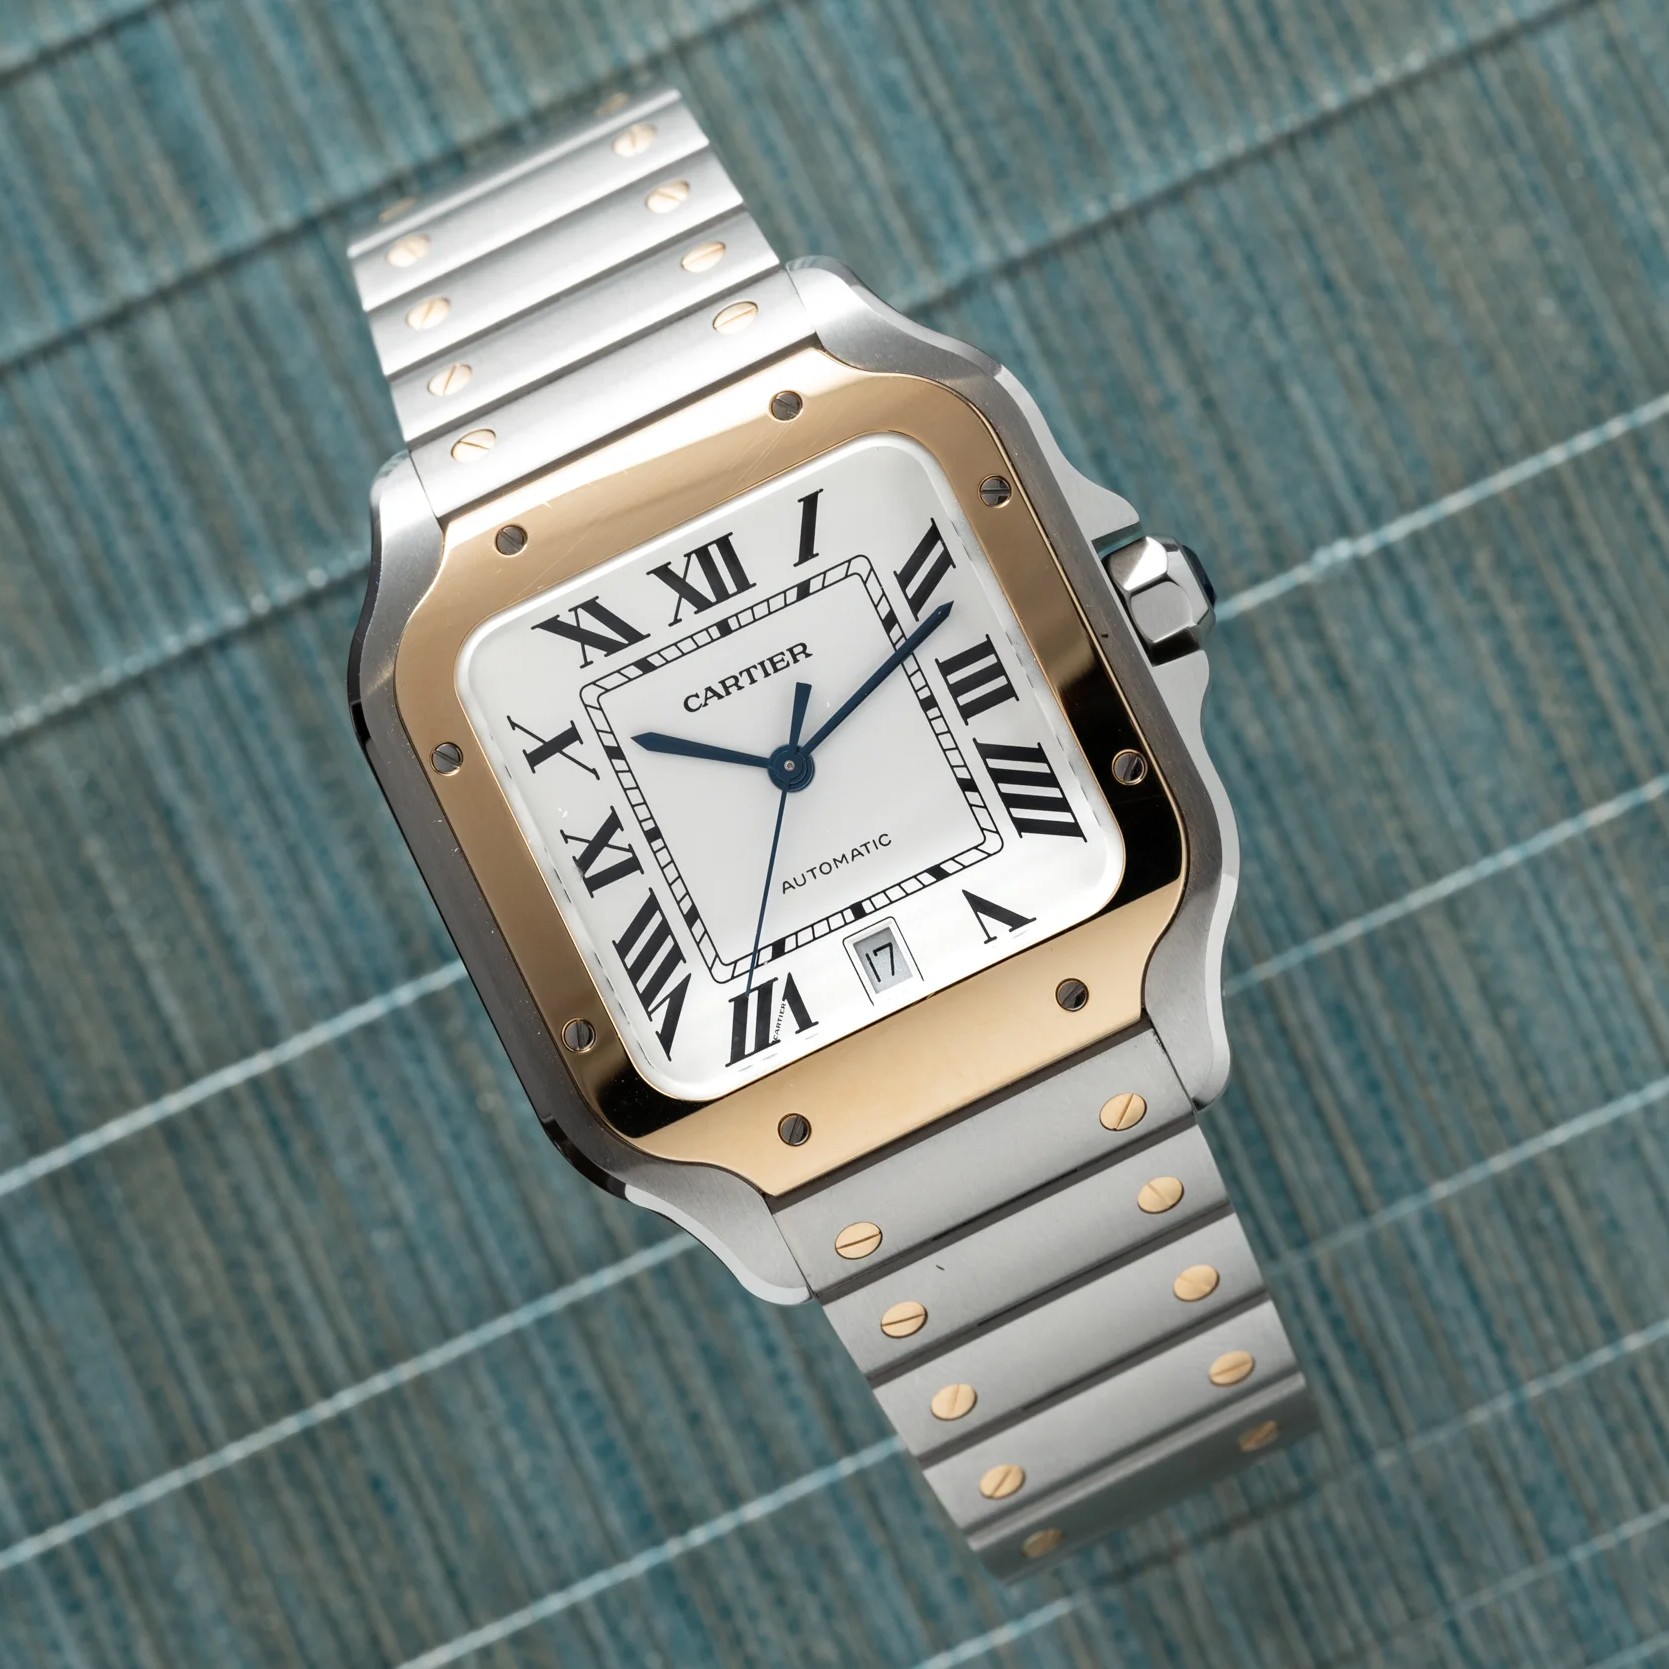 Τα αγαπημένα ρολόγια των “γιάπις” της δεκαετίας του 80 επιστρέφουν δυναμικά